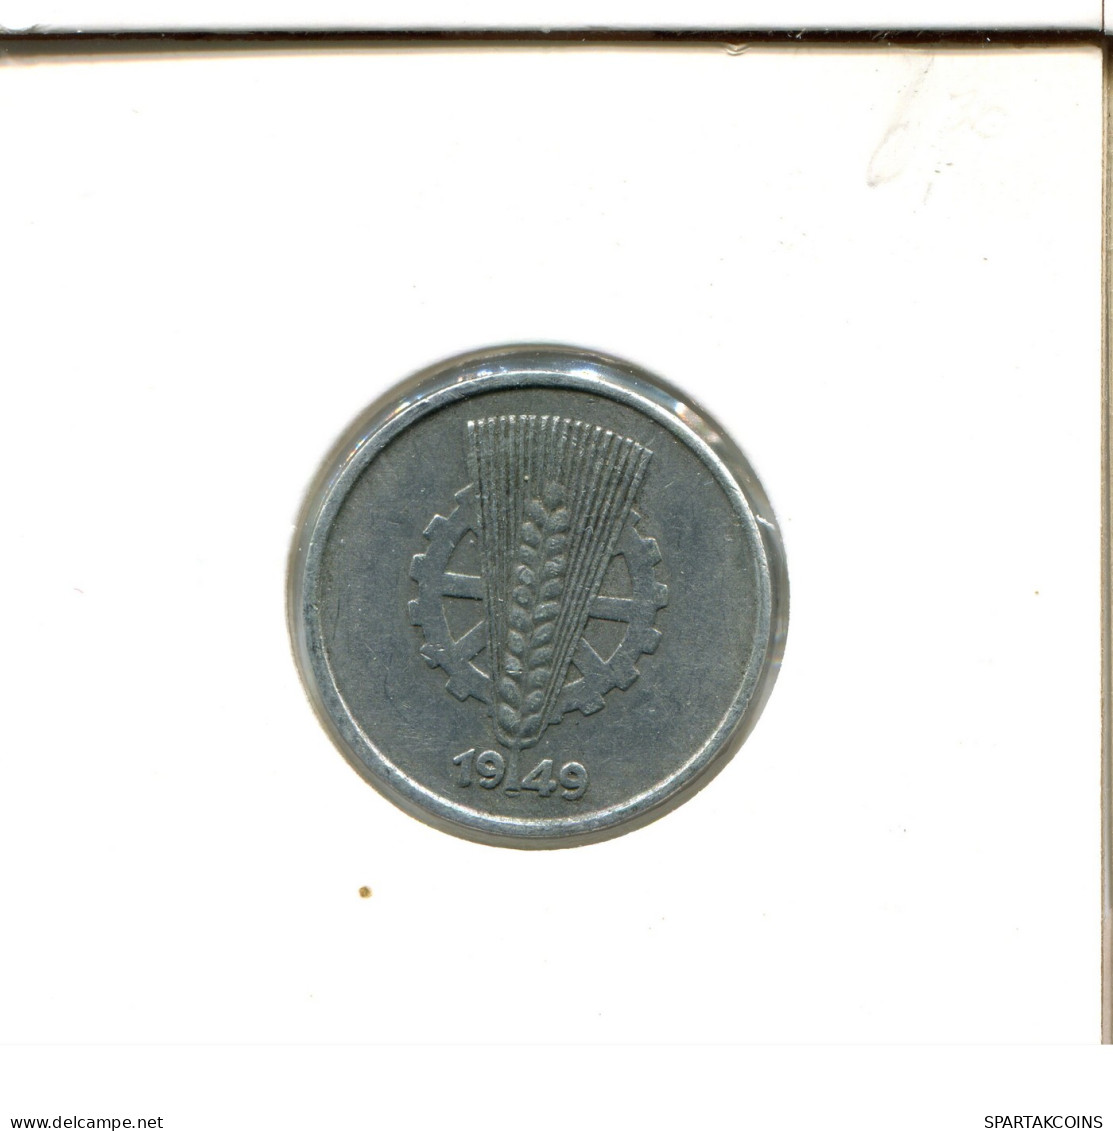 10 PFENNIG 1949 A DDR EAST ALEMANIA Moneda GERMANY #DB115.E - 10 Pfennig